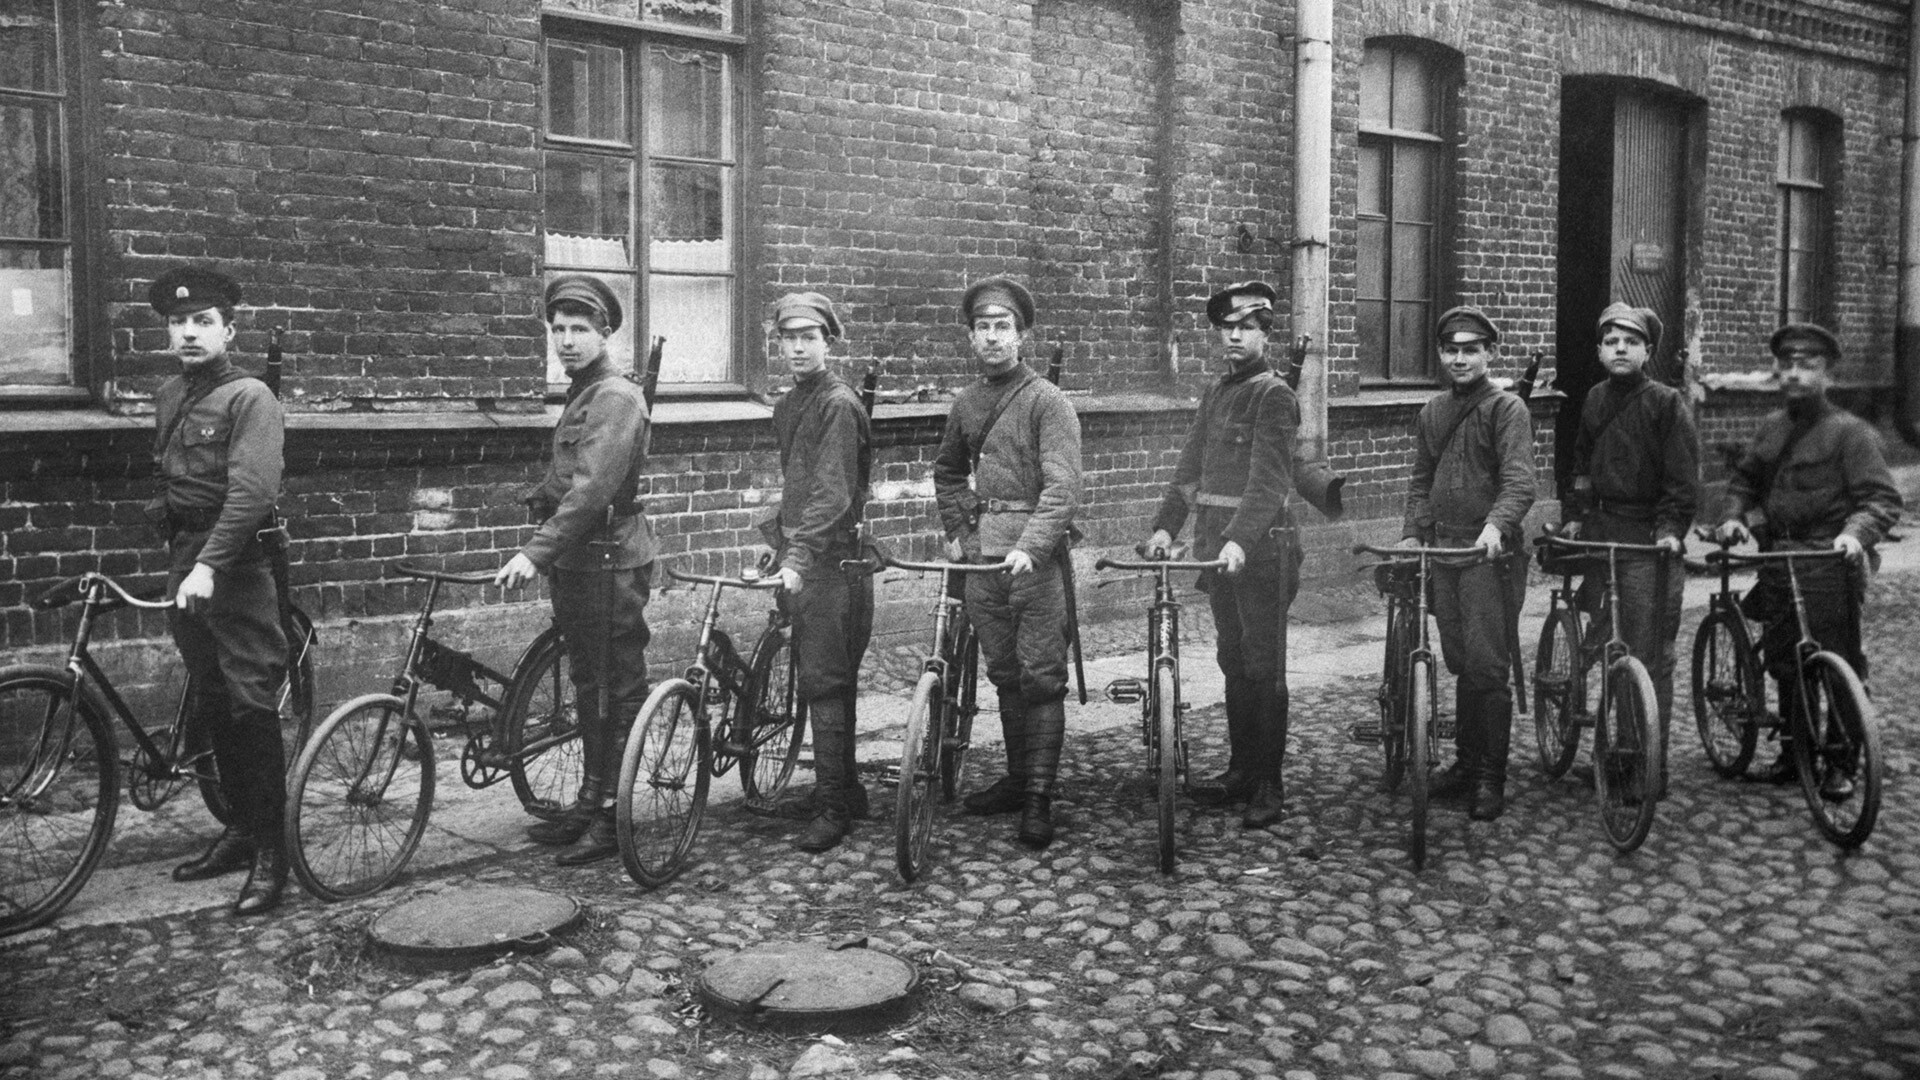 Члены Военной команды самокатчиков при Управлении делами Совнаркома на одной из улиц города во время Гражданской войны.